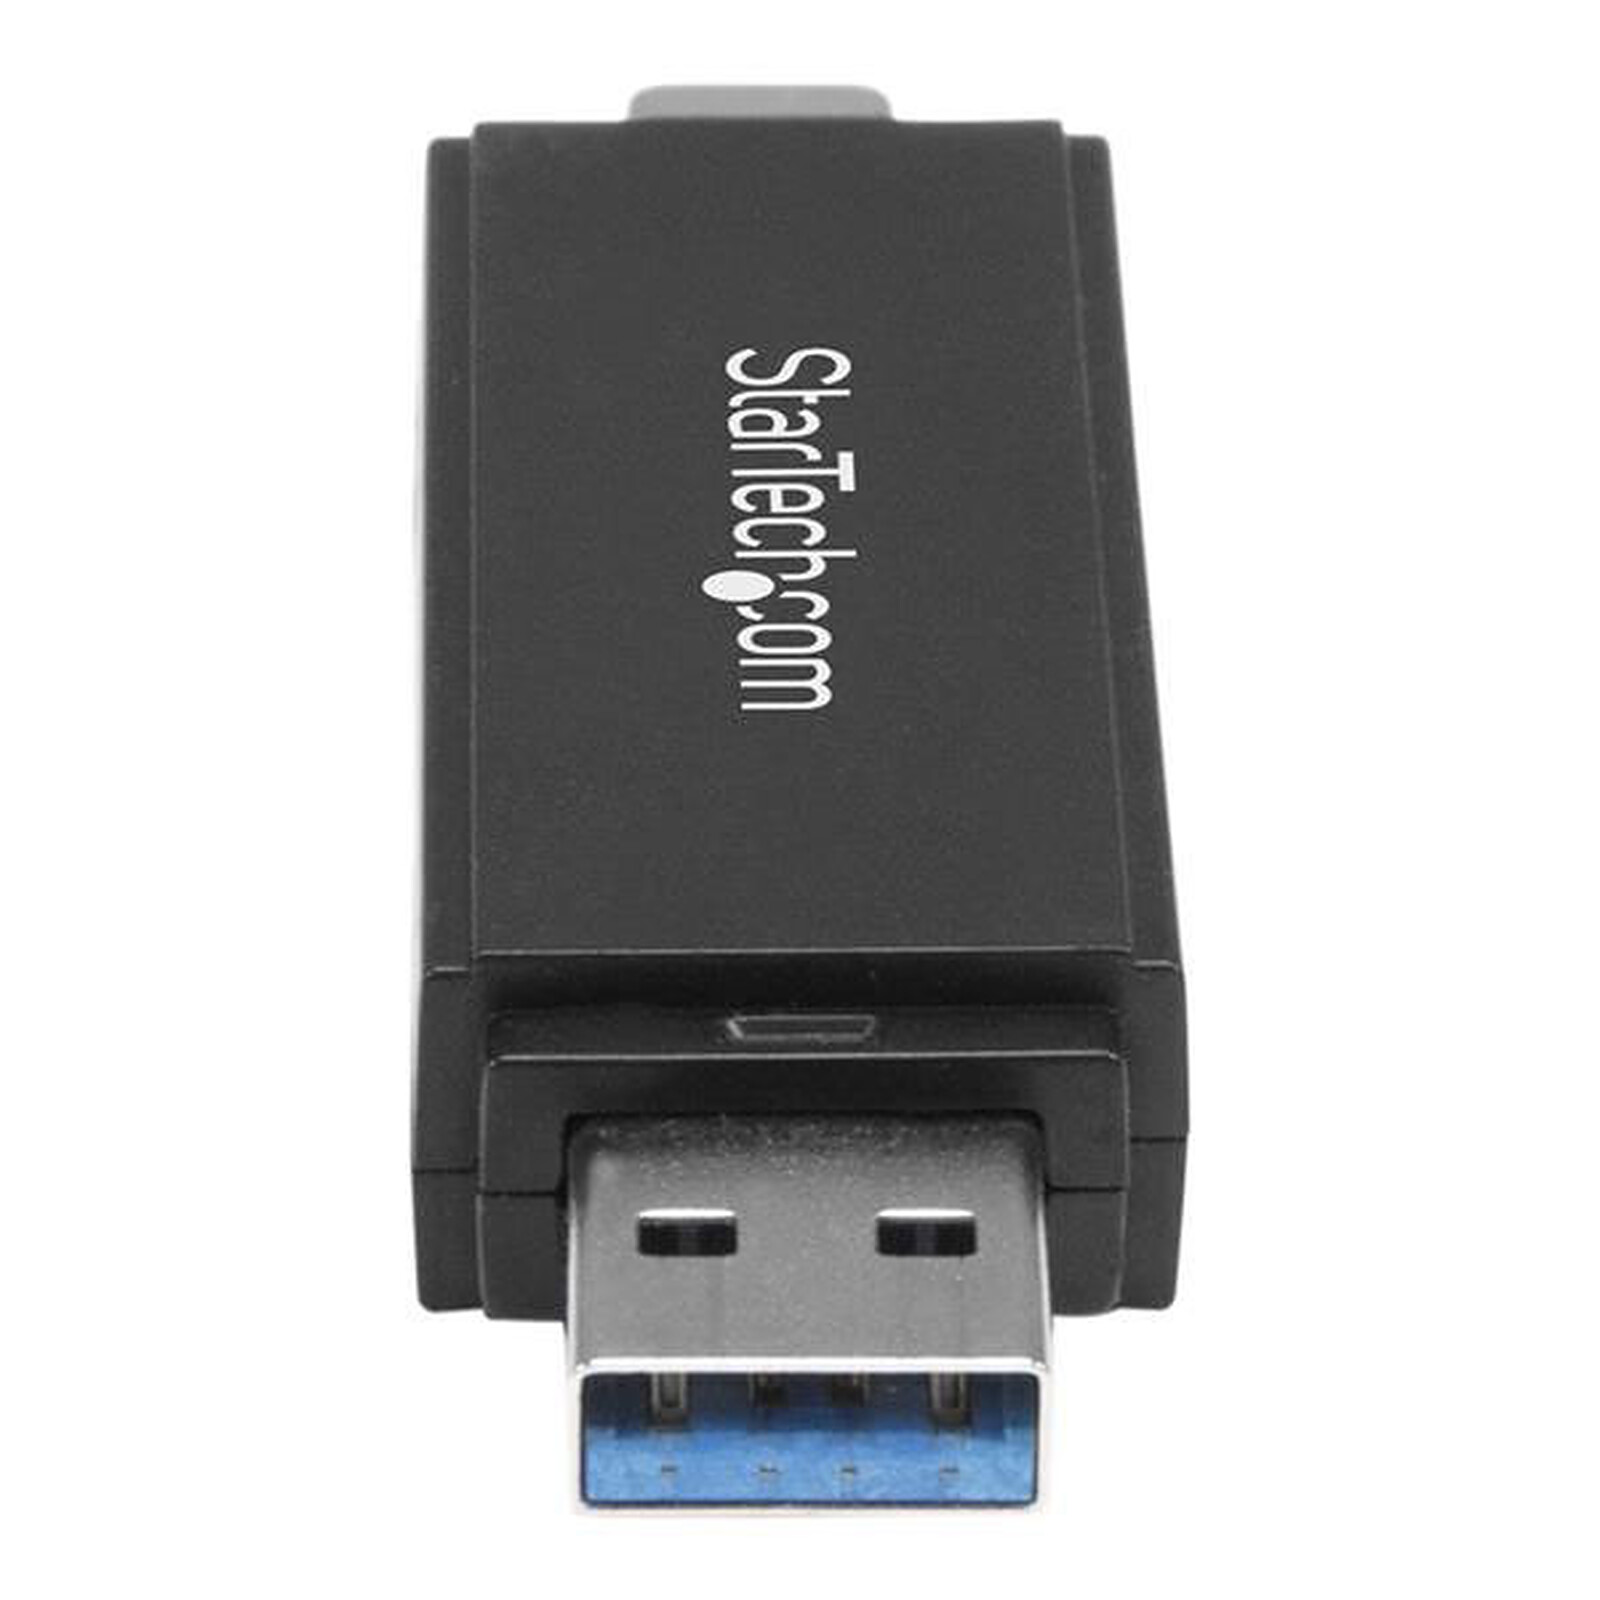 Goobay Nano lecteur de cartes sur USB 2.0 - Lecteur carte mémoire